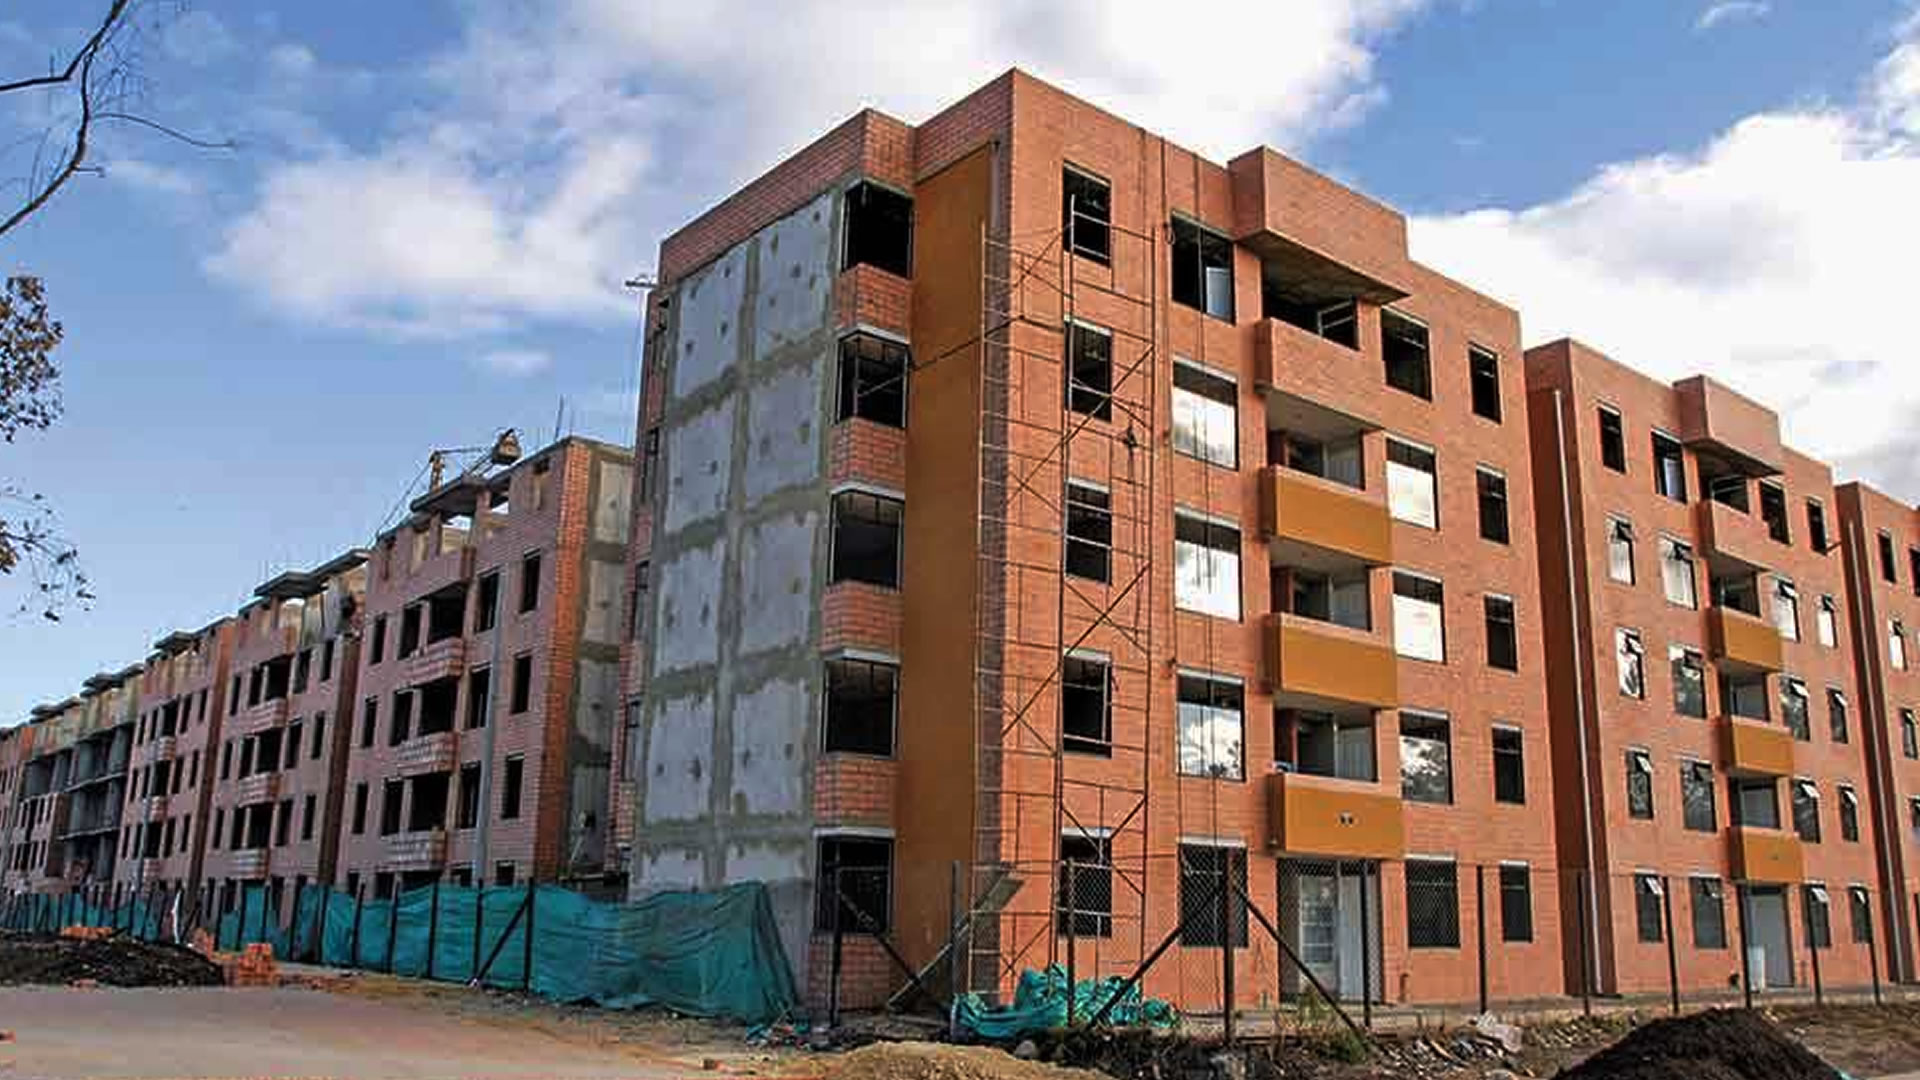 Construcción de viviendas en Colombia. Foto de referencia.